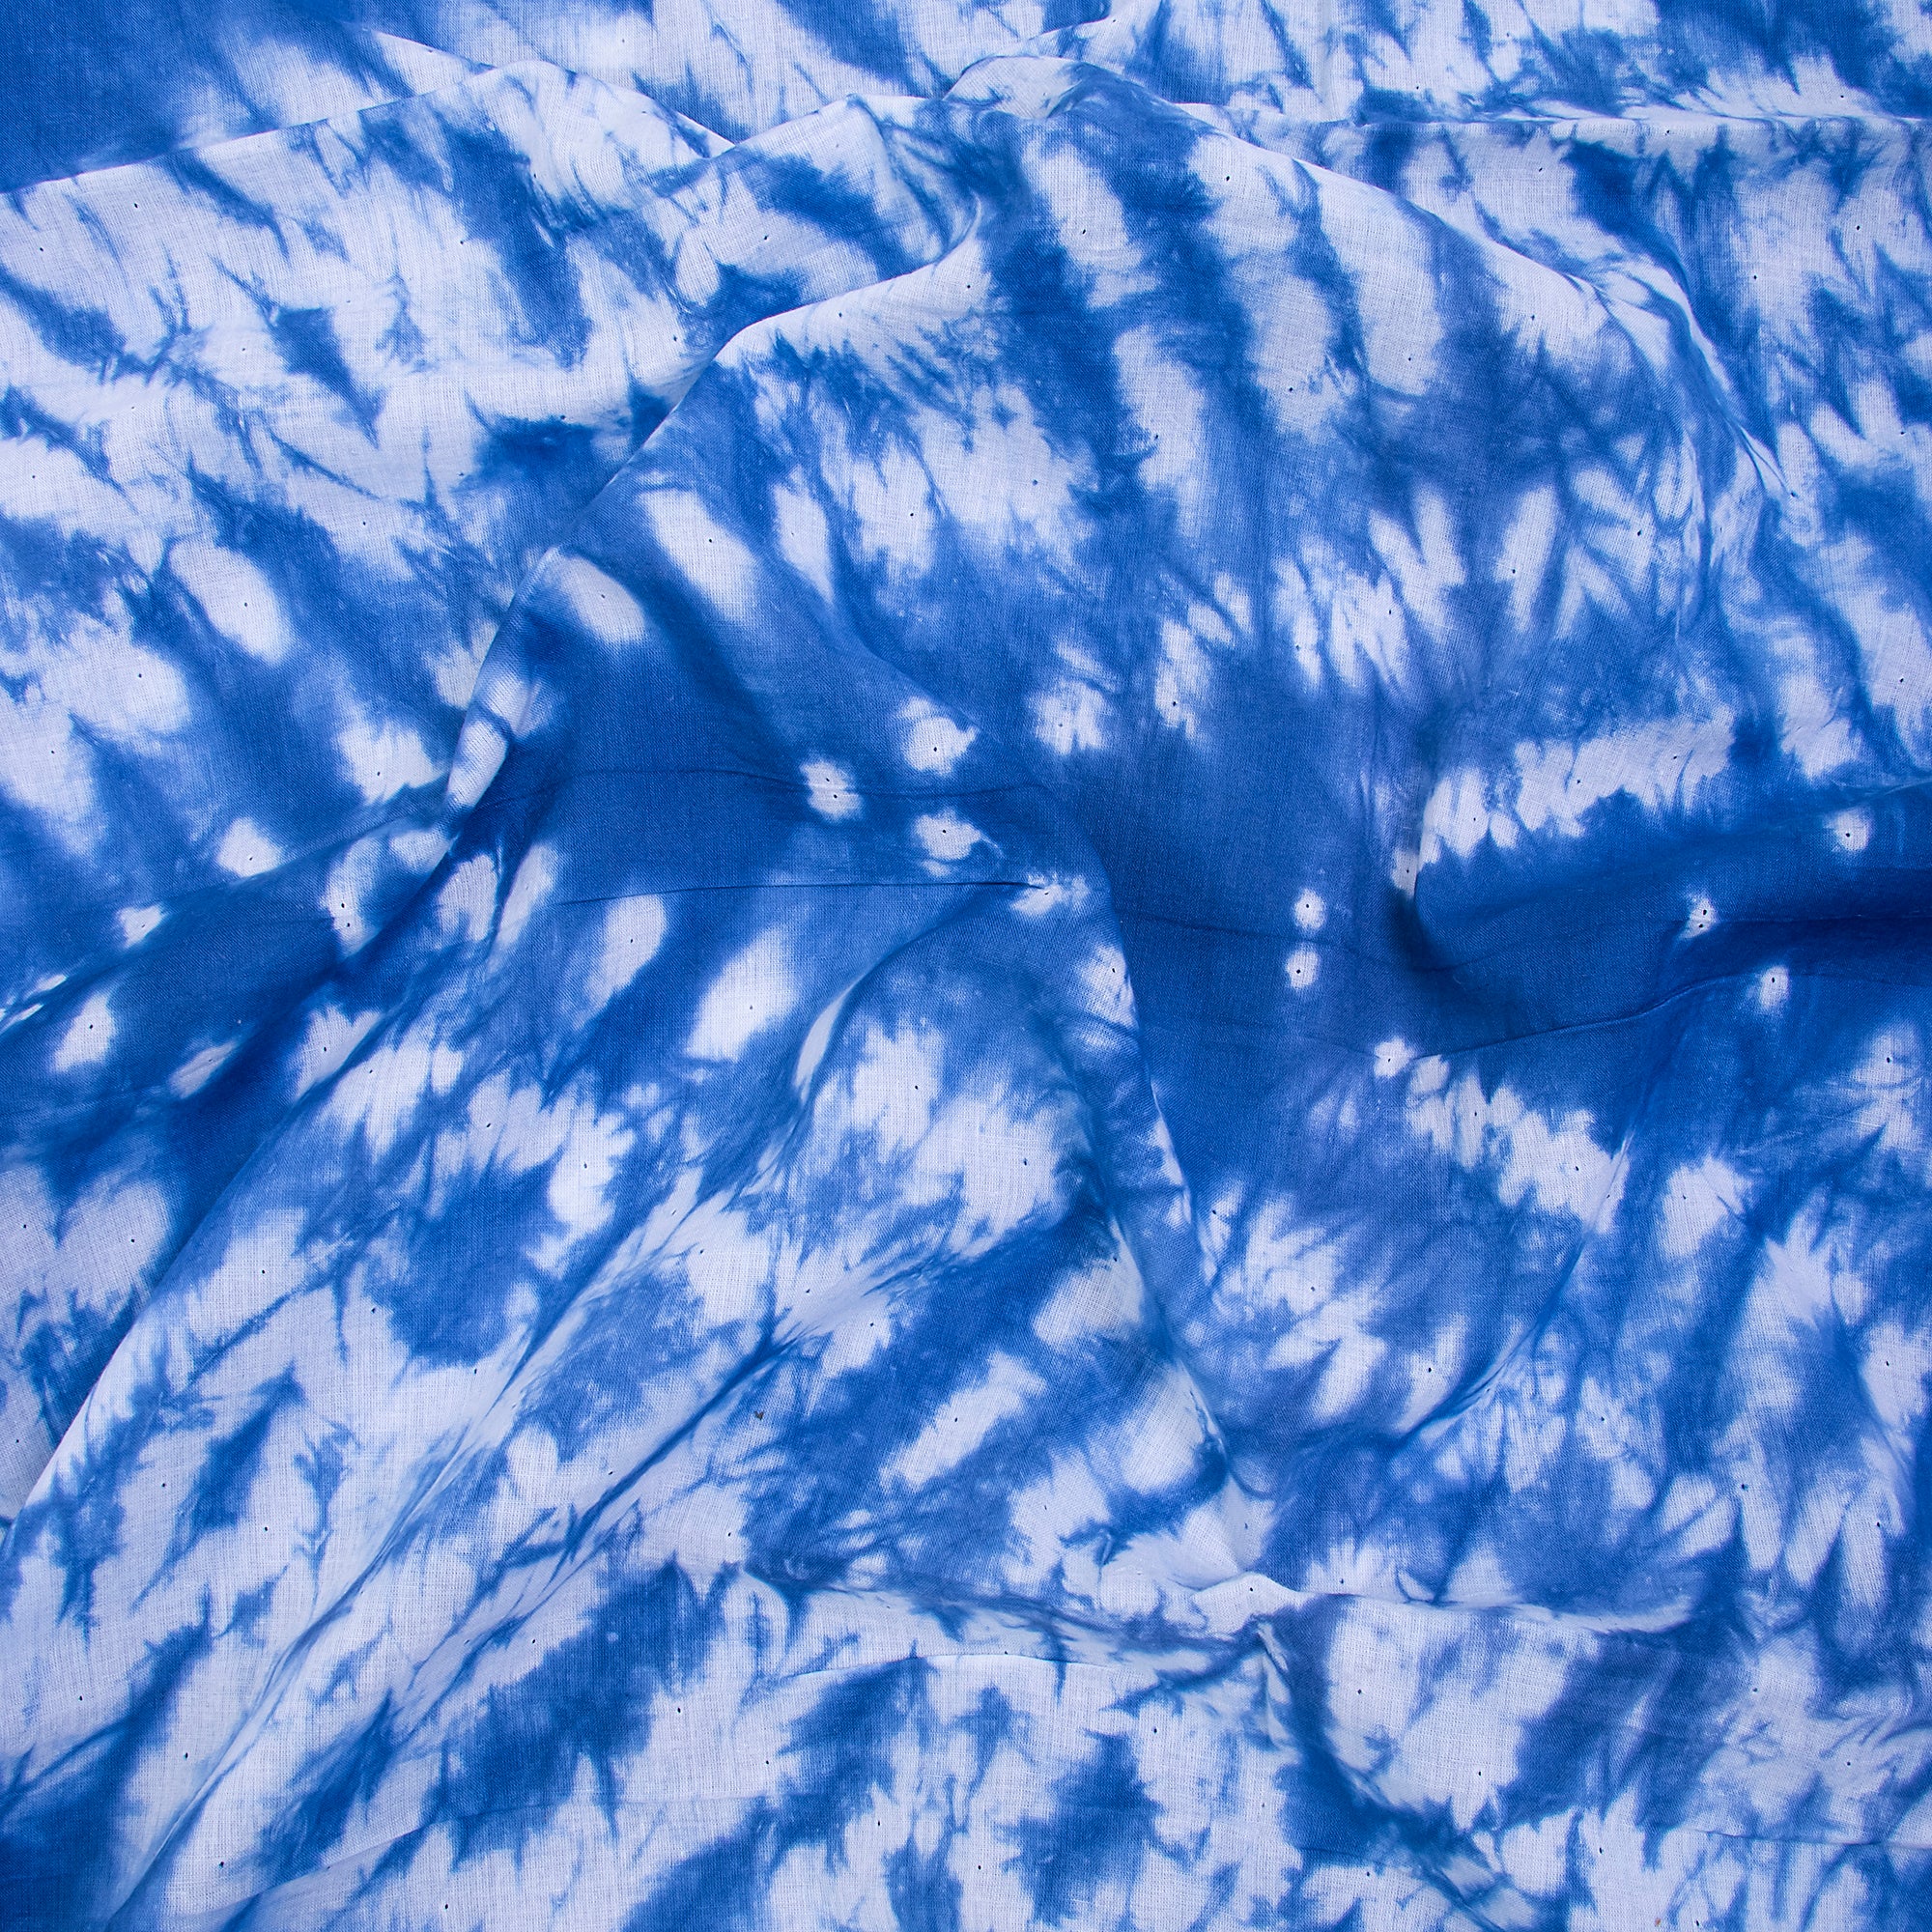 Blue Misty Waters Tie Dye Cotton Fabric